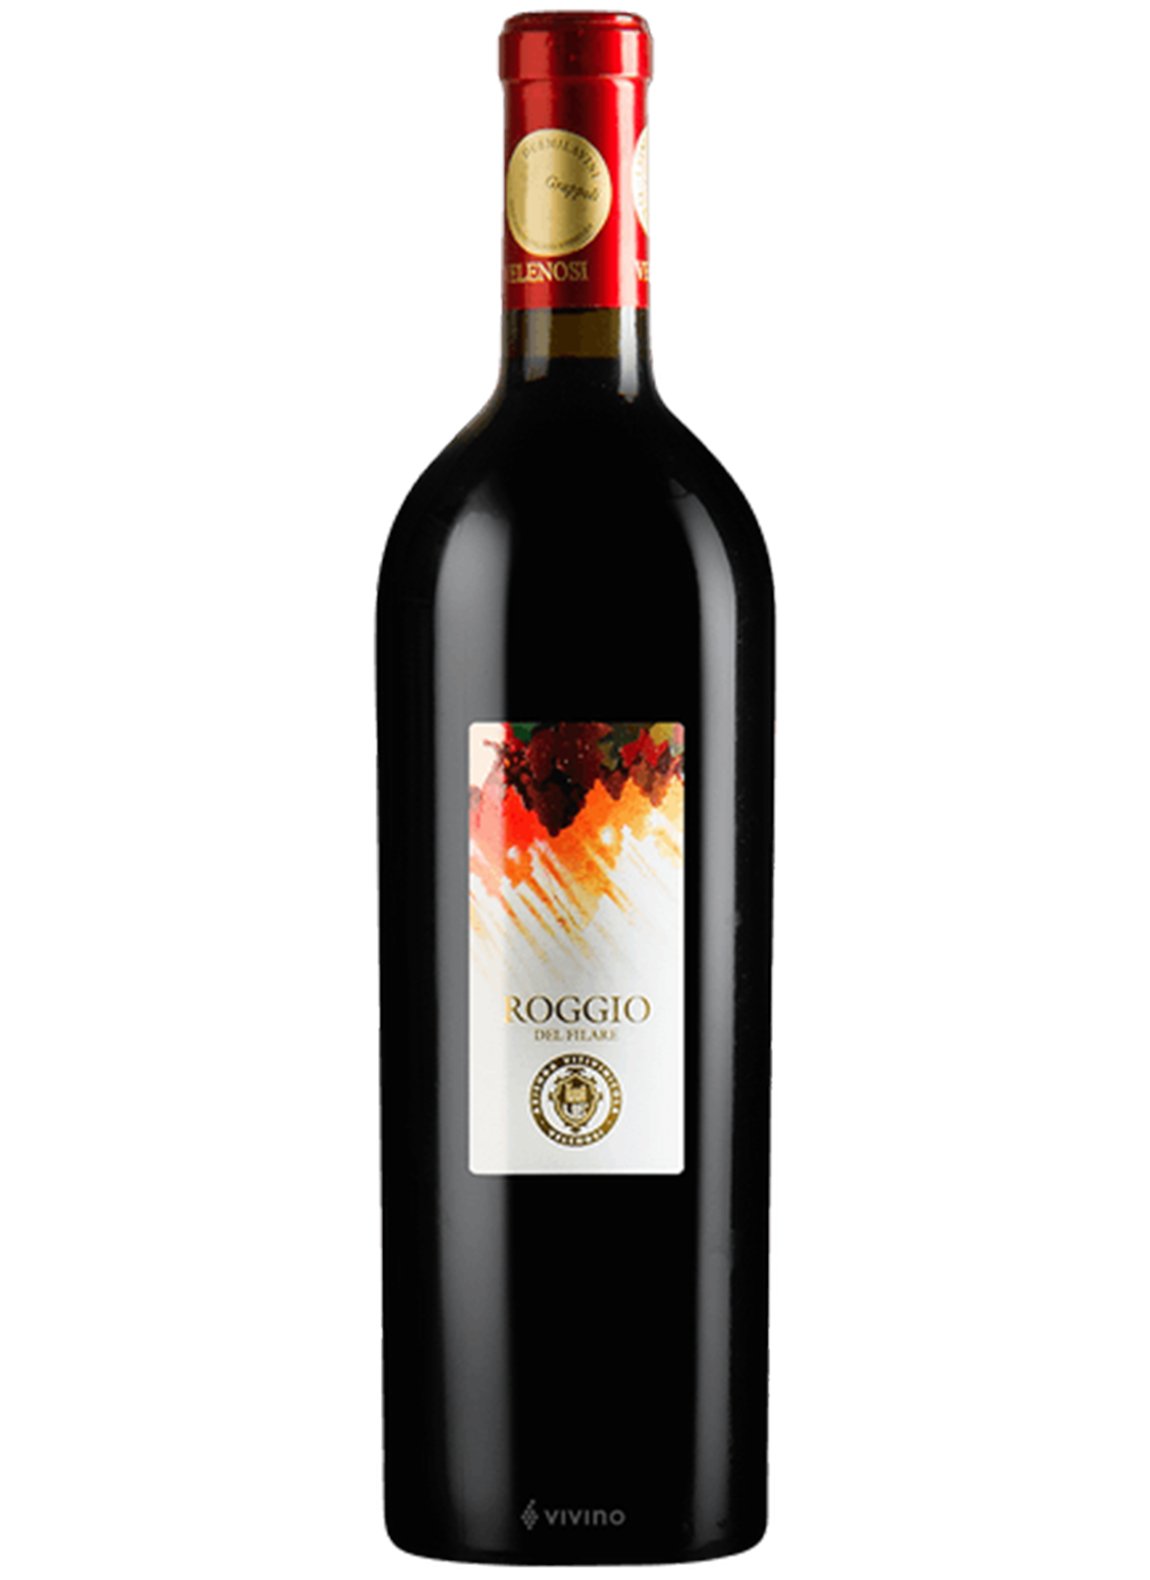 Velenosi 'Roggio del Filare' Rosso Piceno Superiore 2016 - Wine Italy Red - Liquor Wine Cave